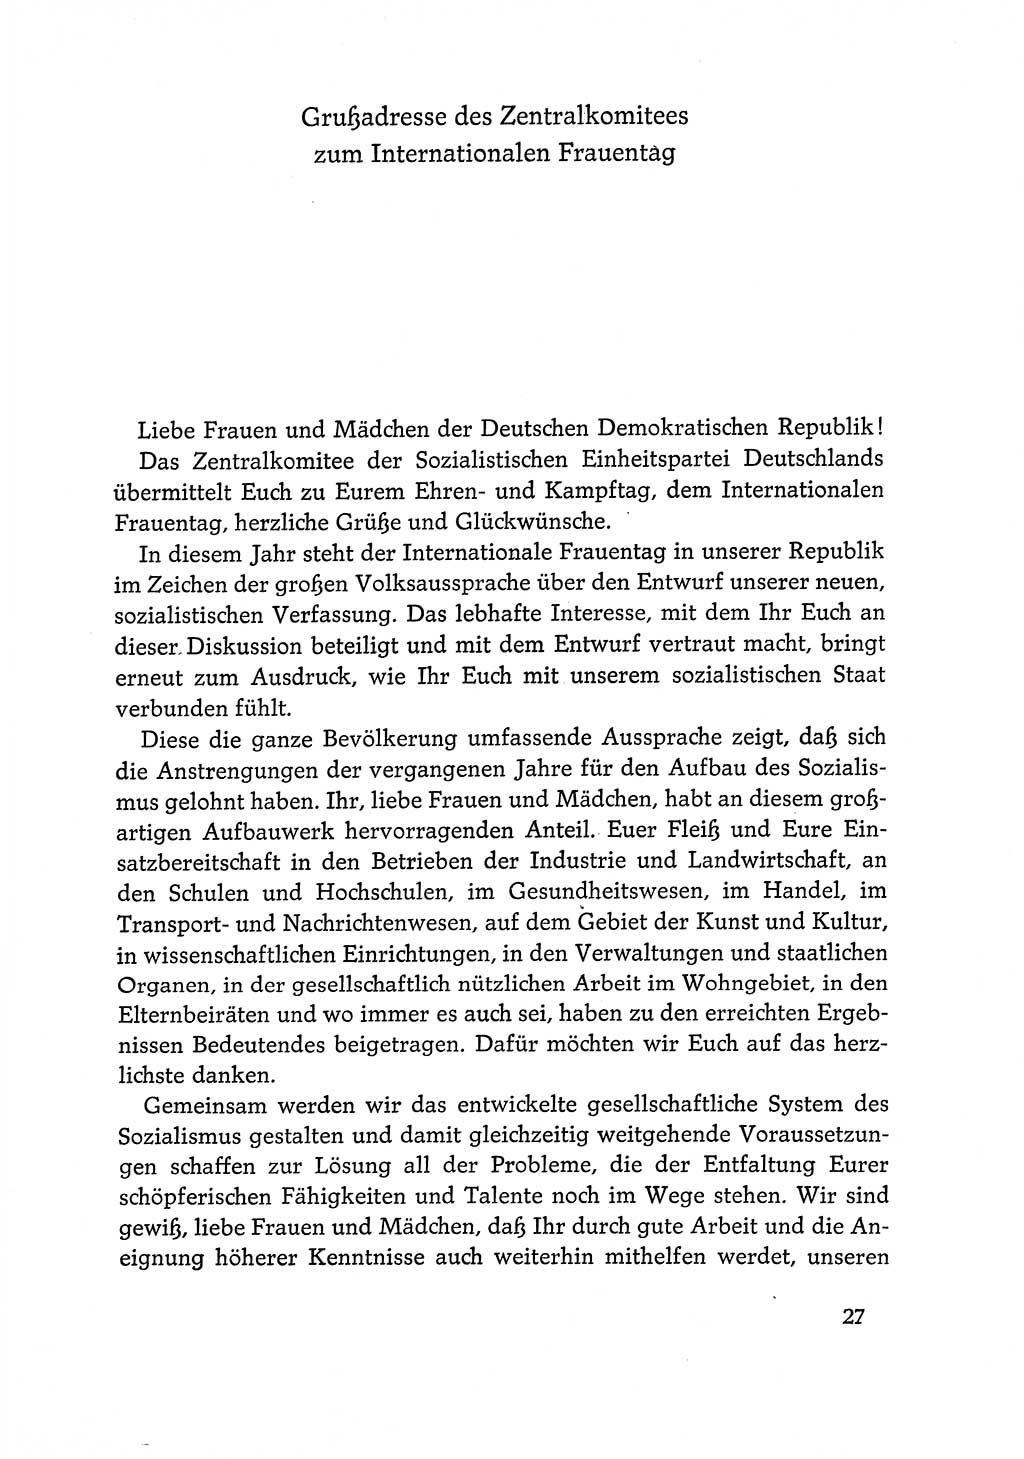 Dokumente der Sozialistischen Einheitspartei Deutschlands (SED) [Deutsche Demokratische Republik (DDR)] 1968-1969, Seite 27 (Dok. SED DDR 1968-1969, S. 27)